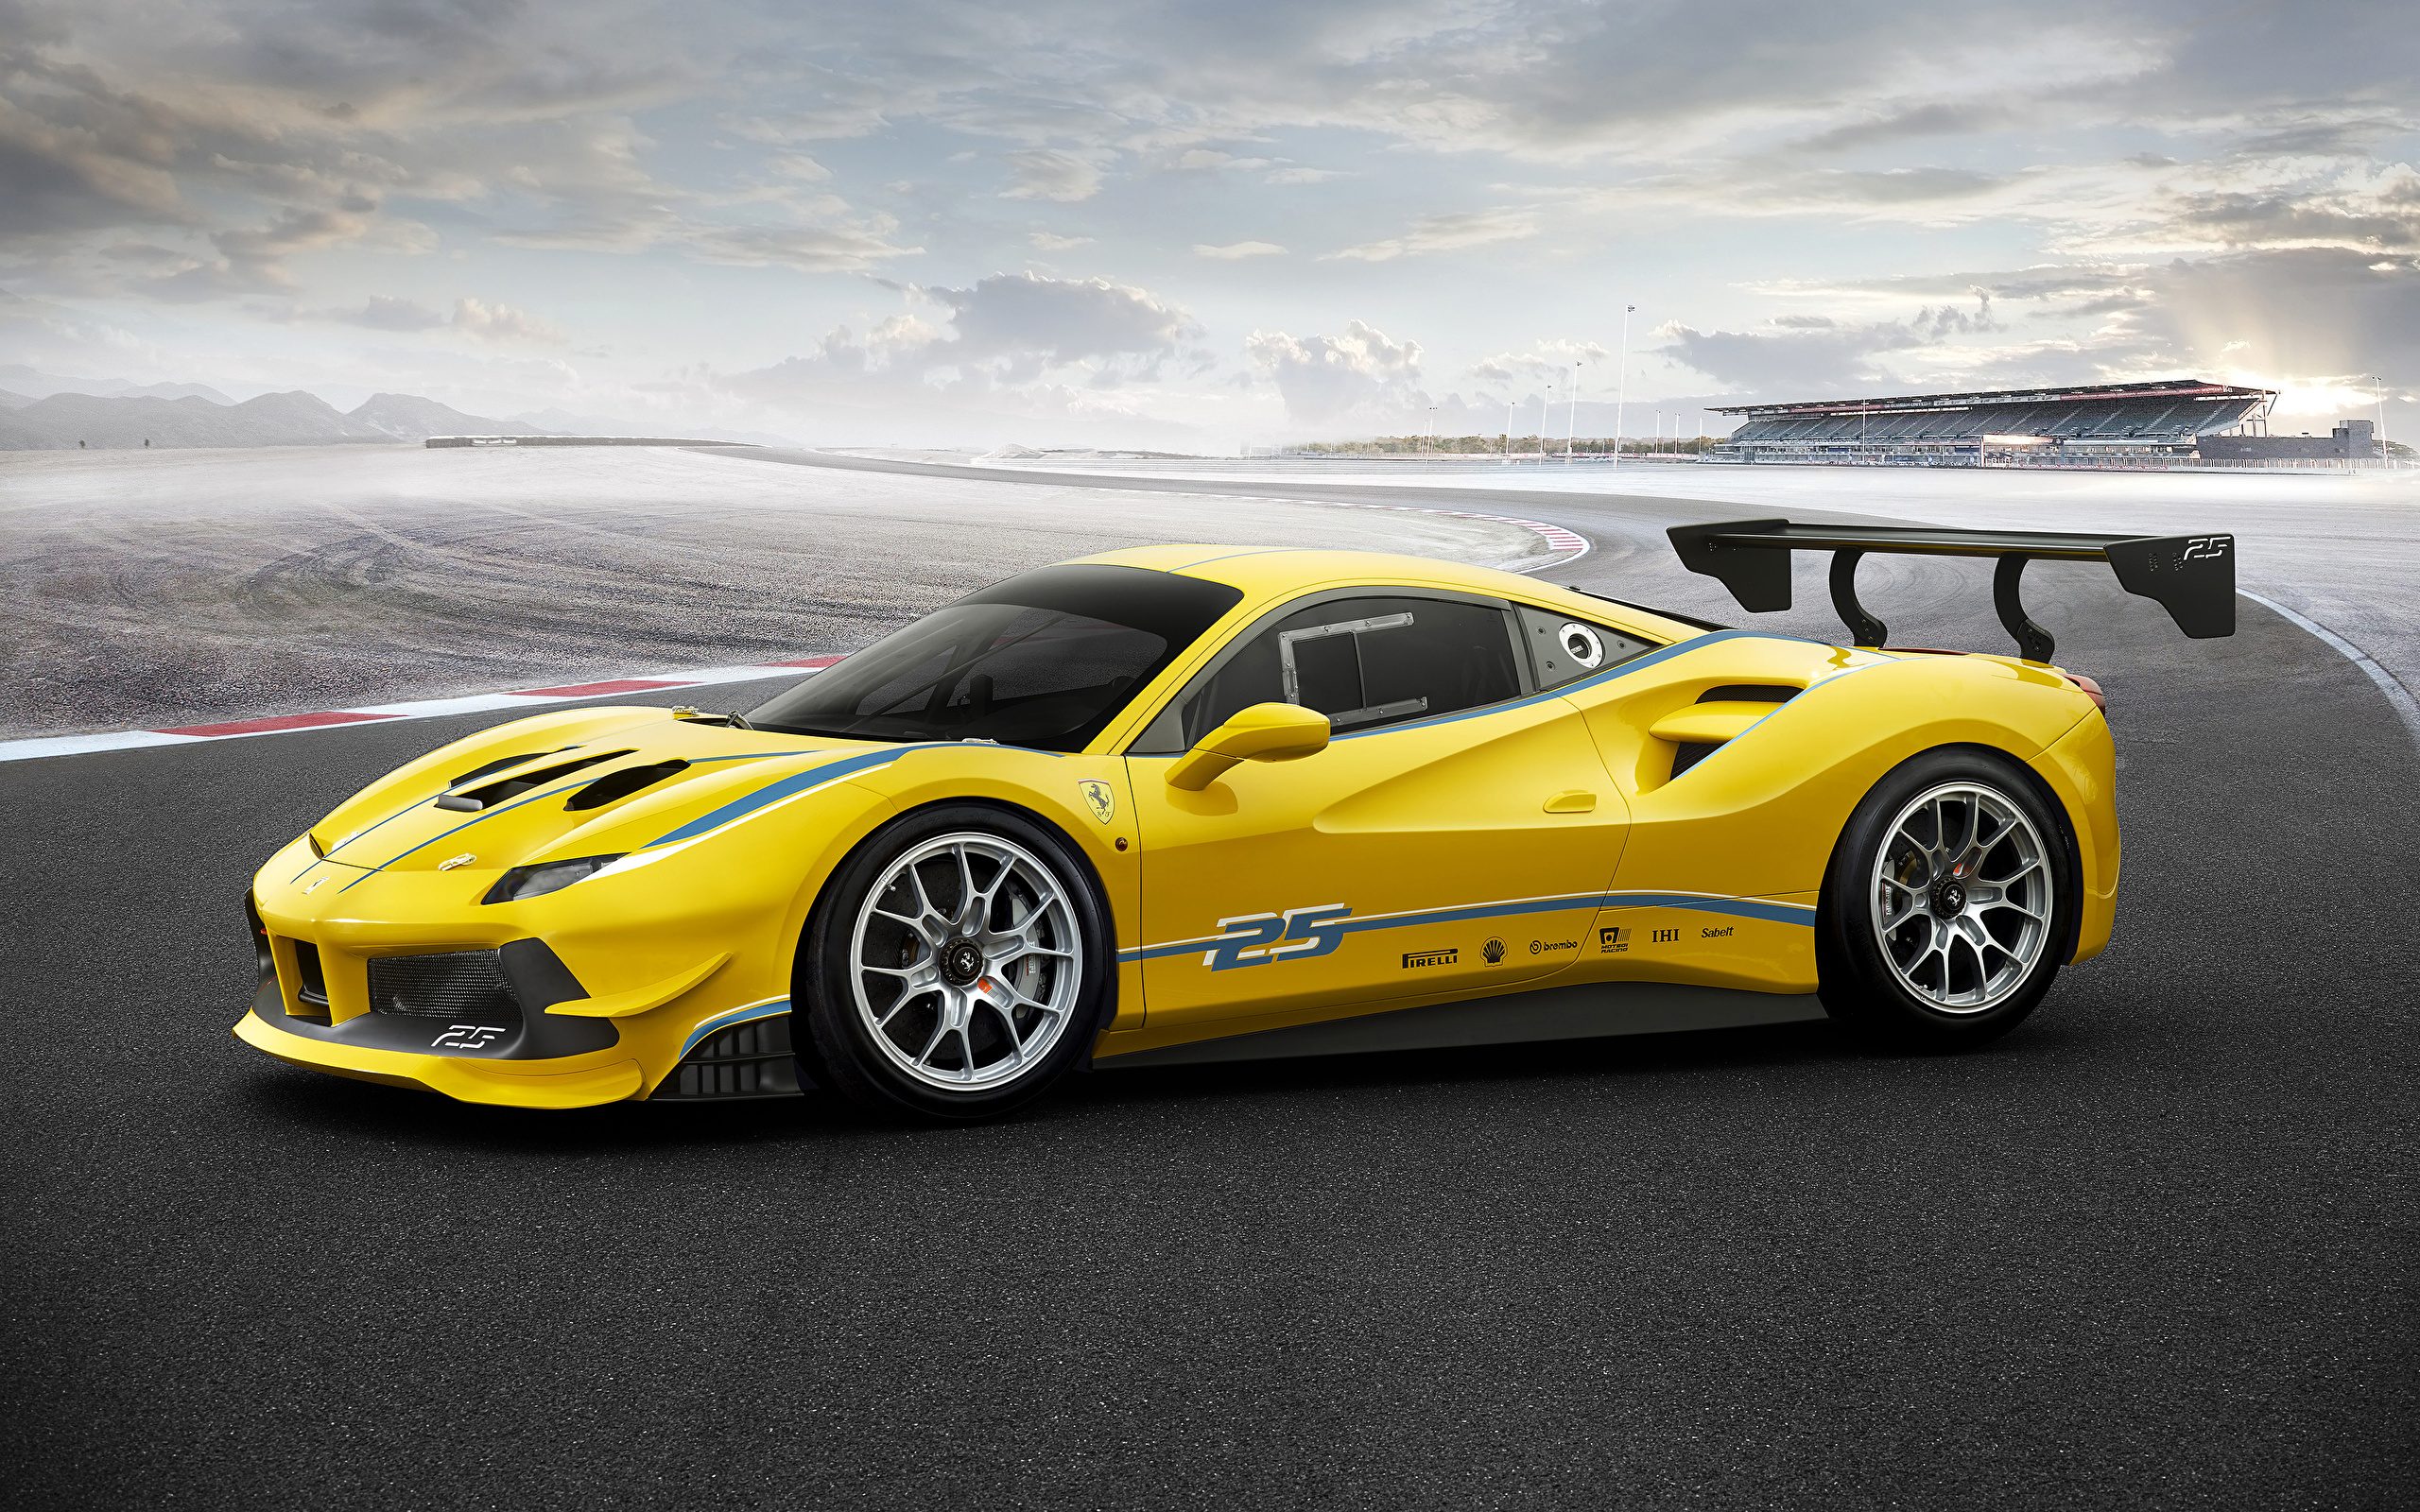 Ferrari_2017_488_Challenge_Yellow_Luxury_512960_2560x1600.jpg